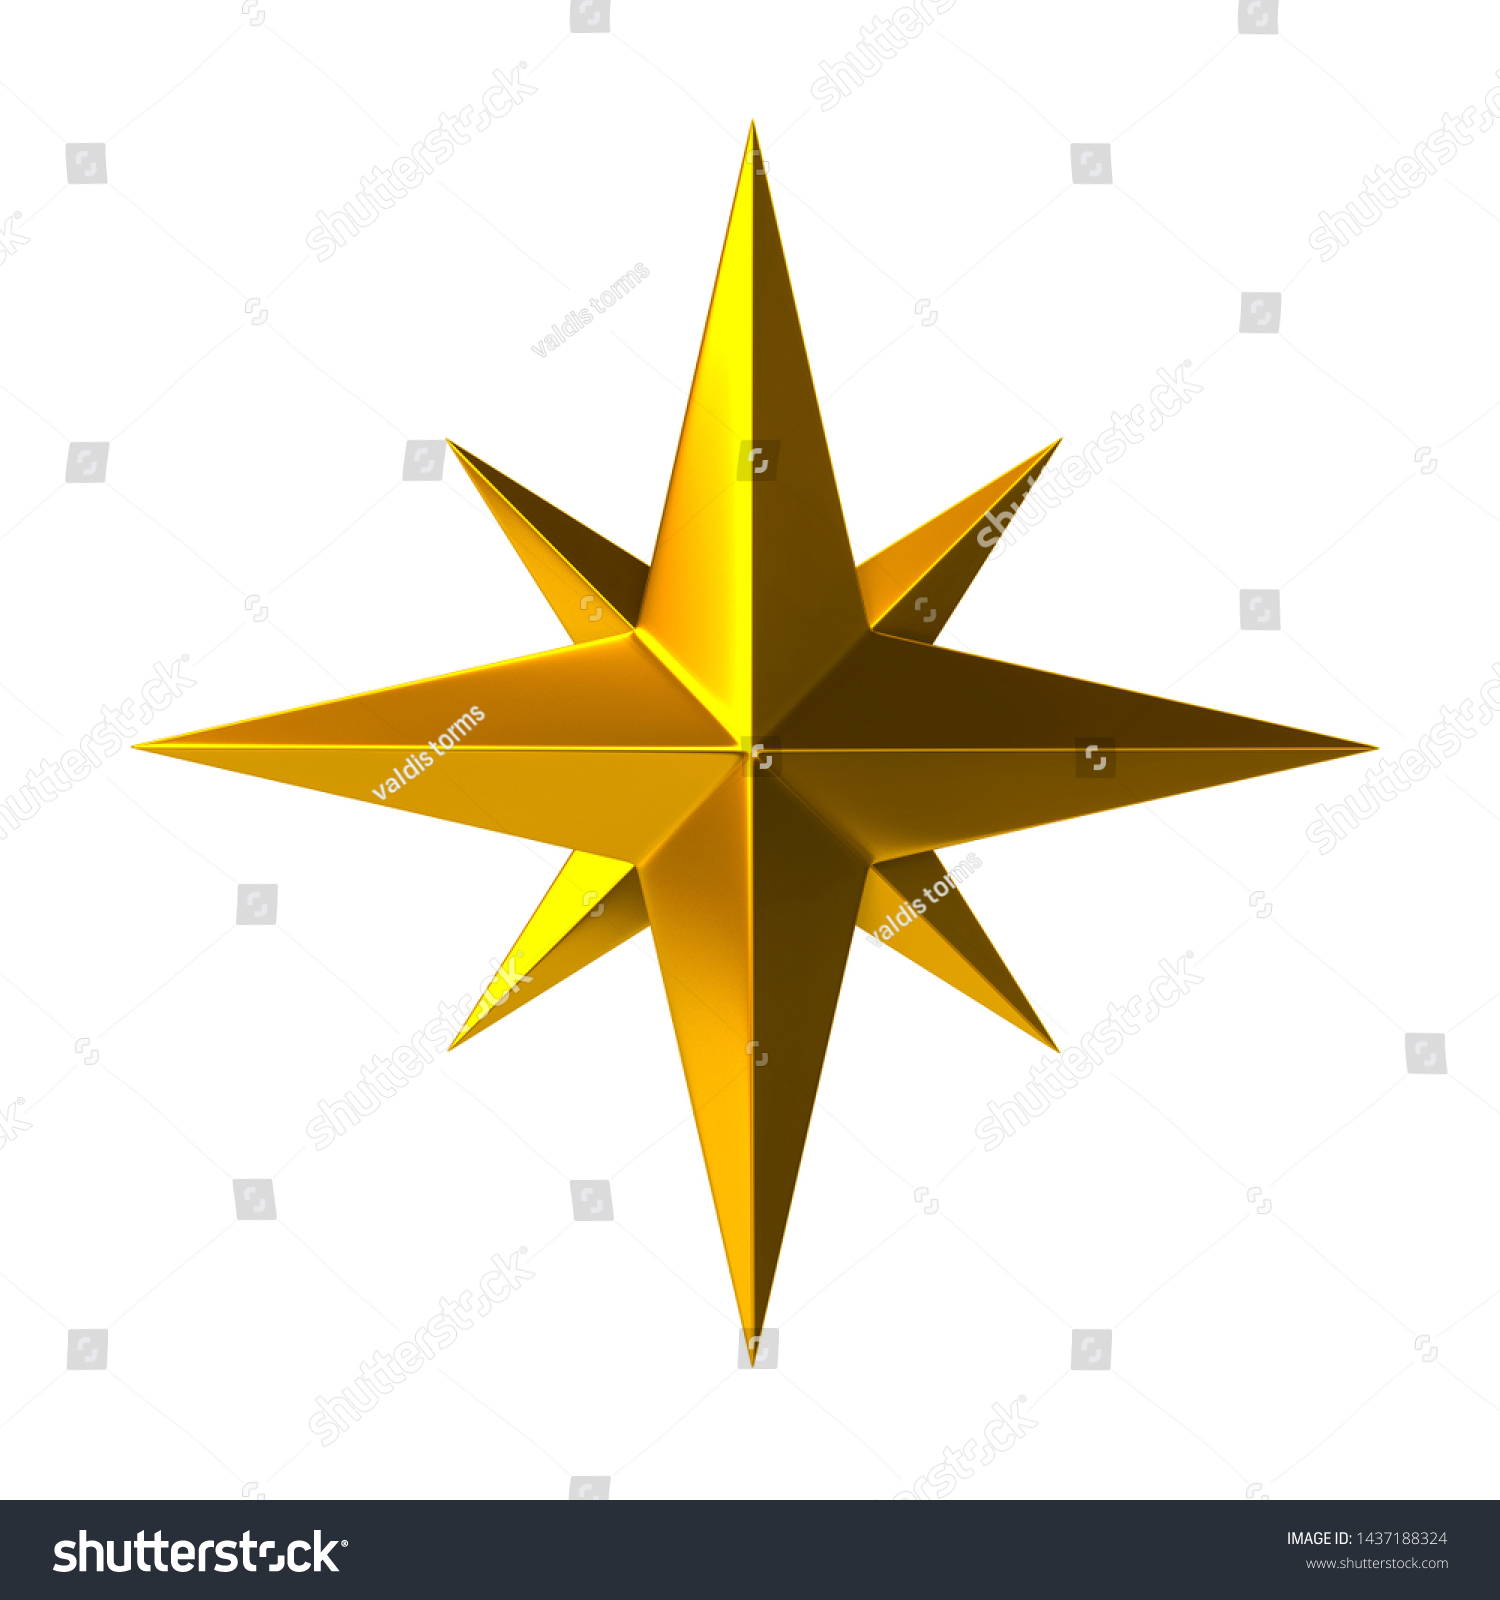 Golden Compass Rose 3d Illustration On Stock Illustration 1437188324 Shutterstock 3369